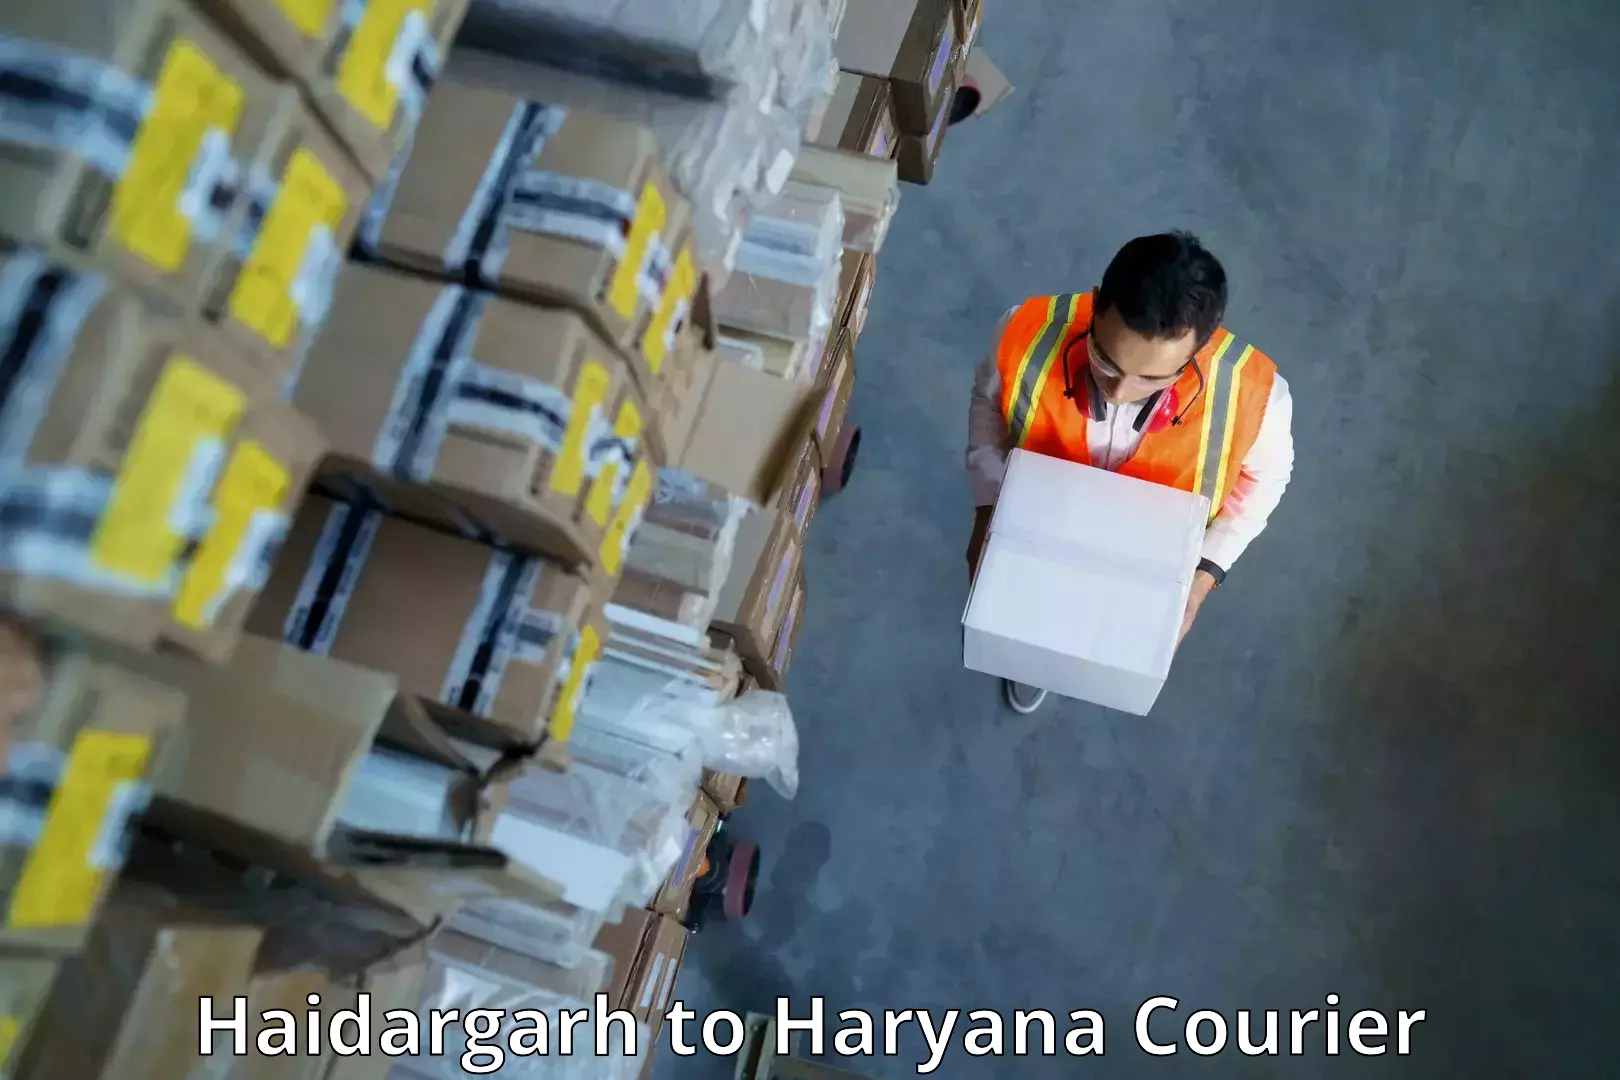 Digital shipping tools Haidargarh to Chaudhary Charan Singh Haryana Agricultural University Hisar